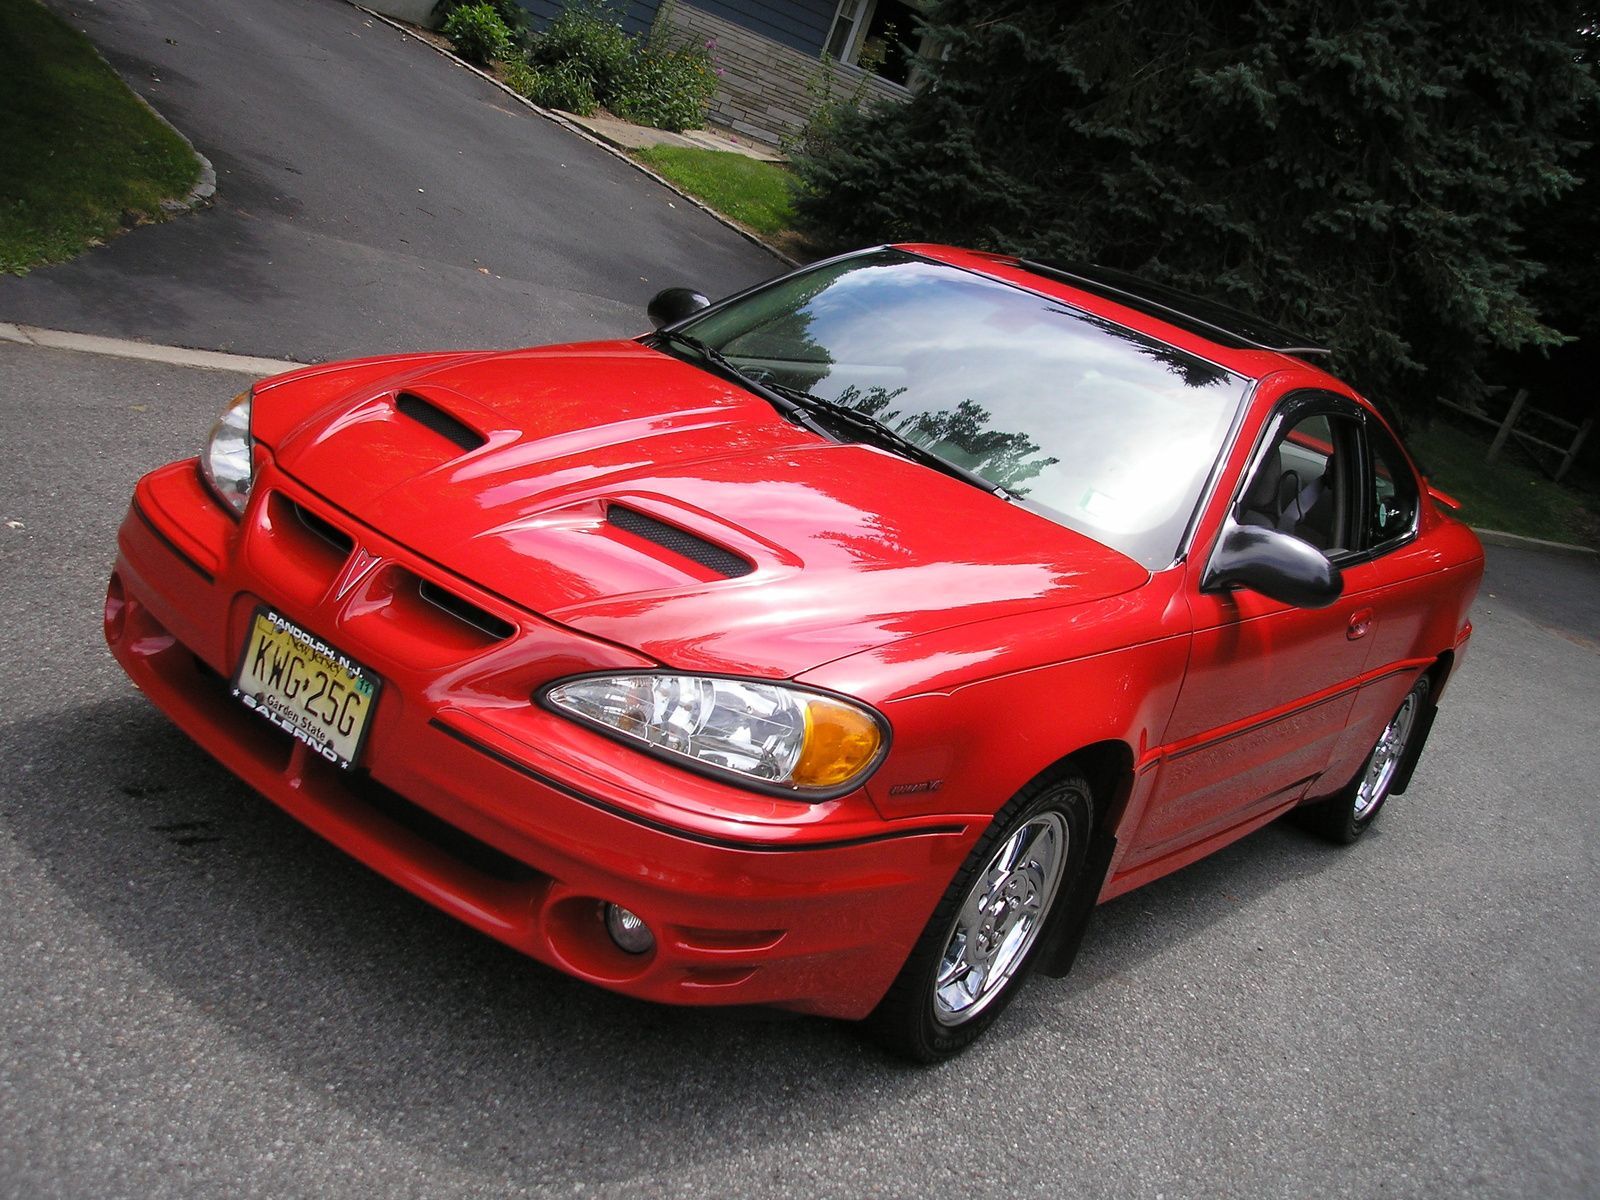 Red Pontiac Grand AM SC/T